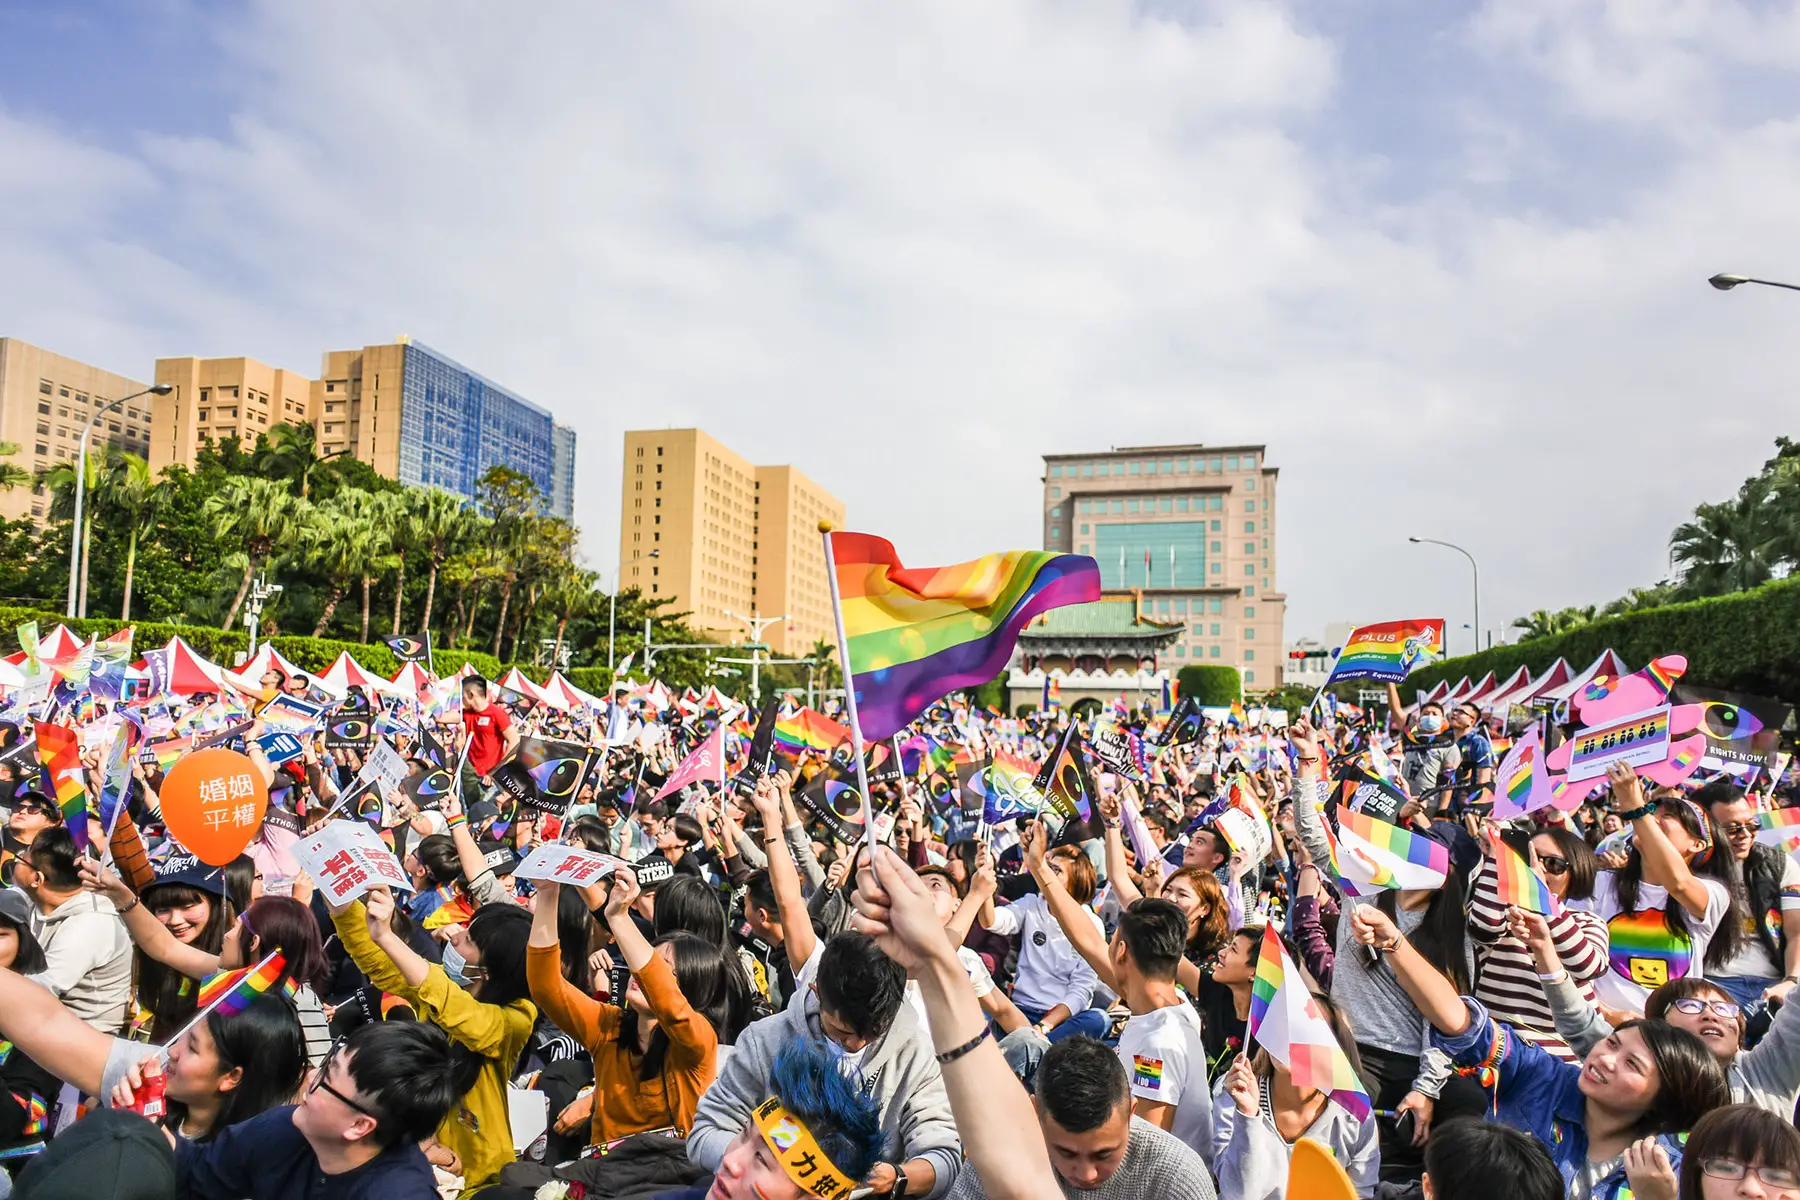 Taipei same-sex marriage rally